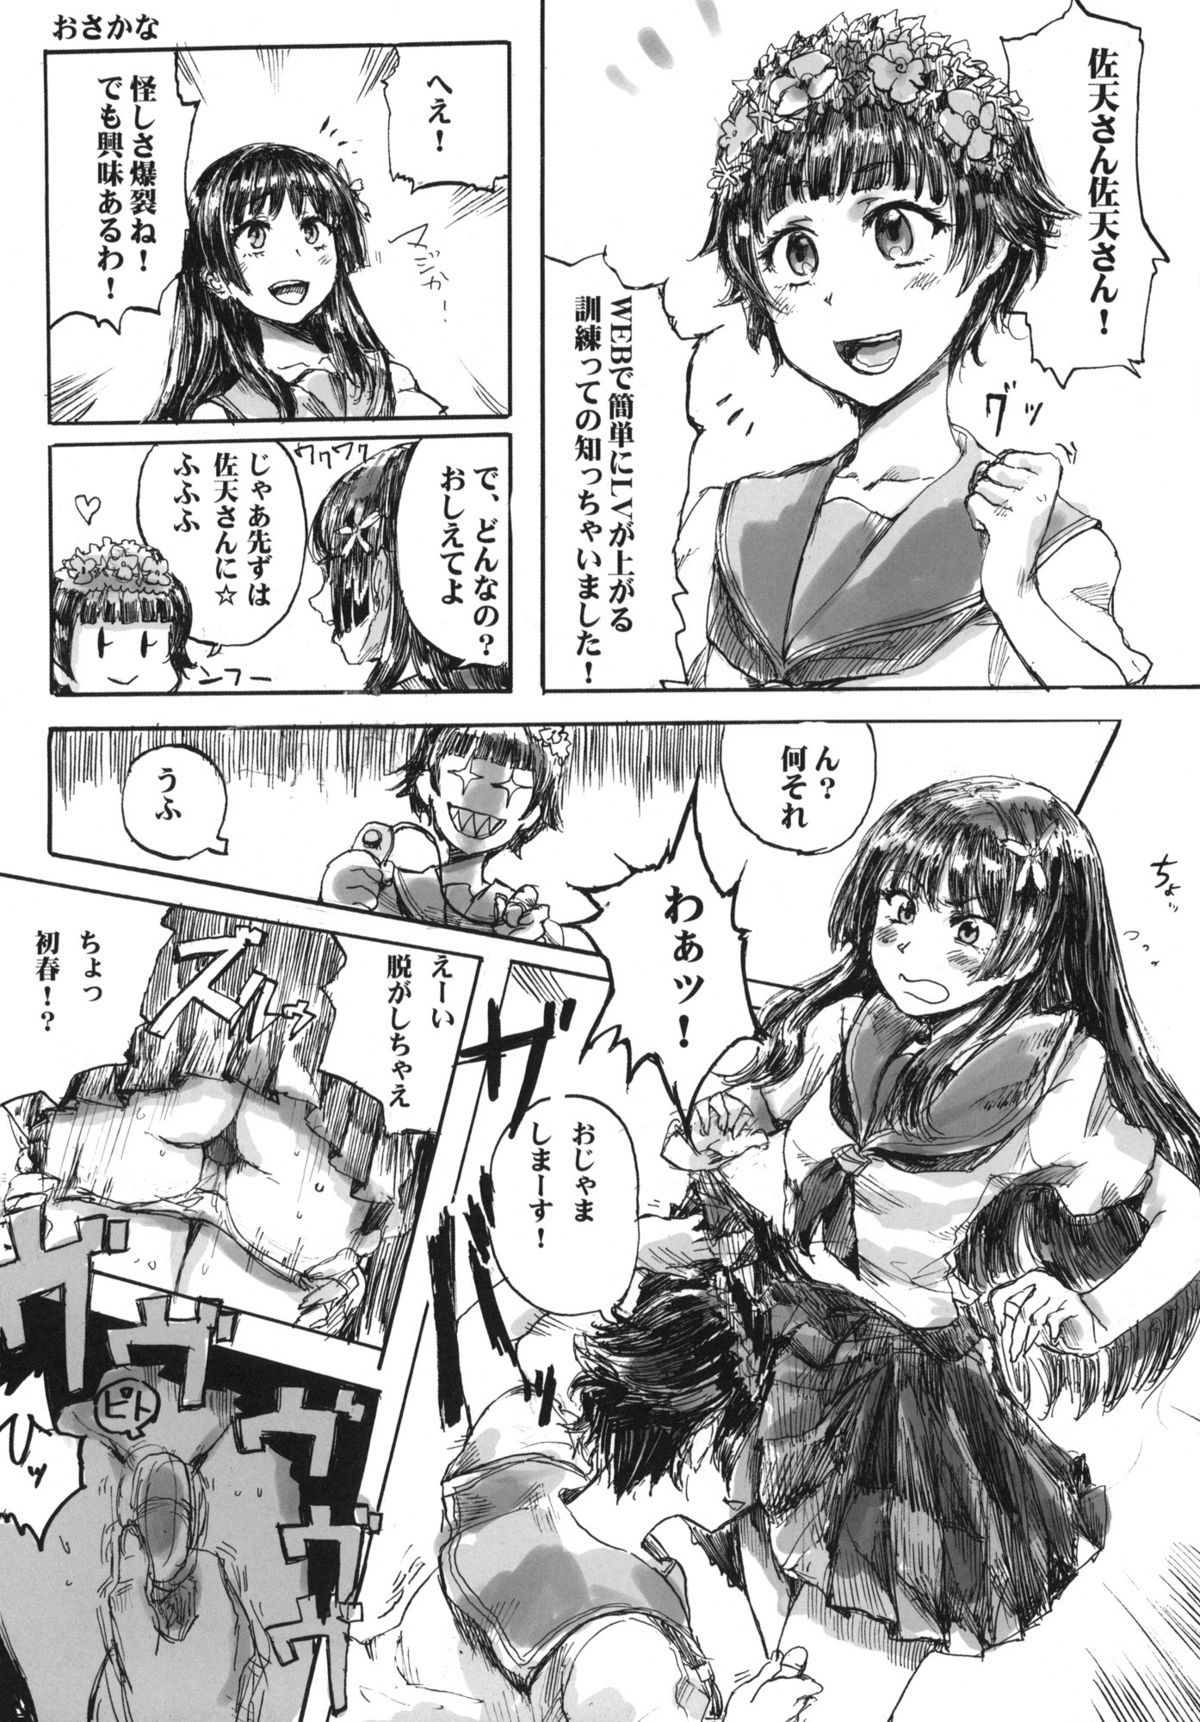 [MMU2000 (Mishima Hiroji)] i.Saten (Toaru Kagaku no Railgun) page 23 full